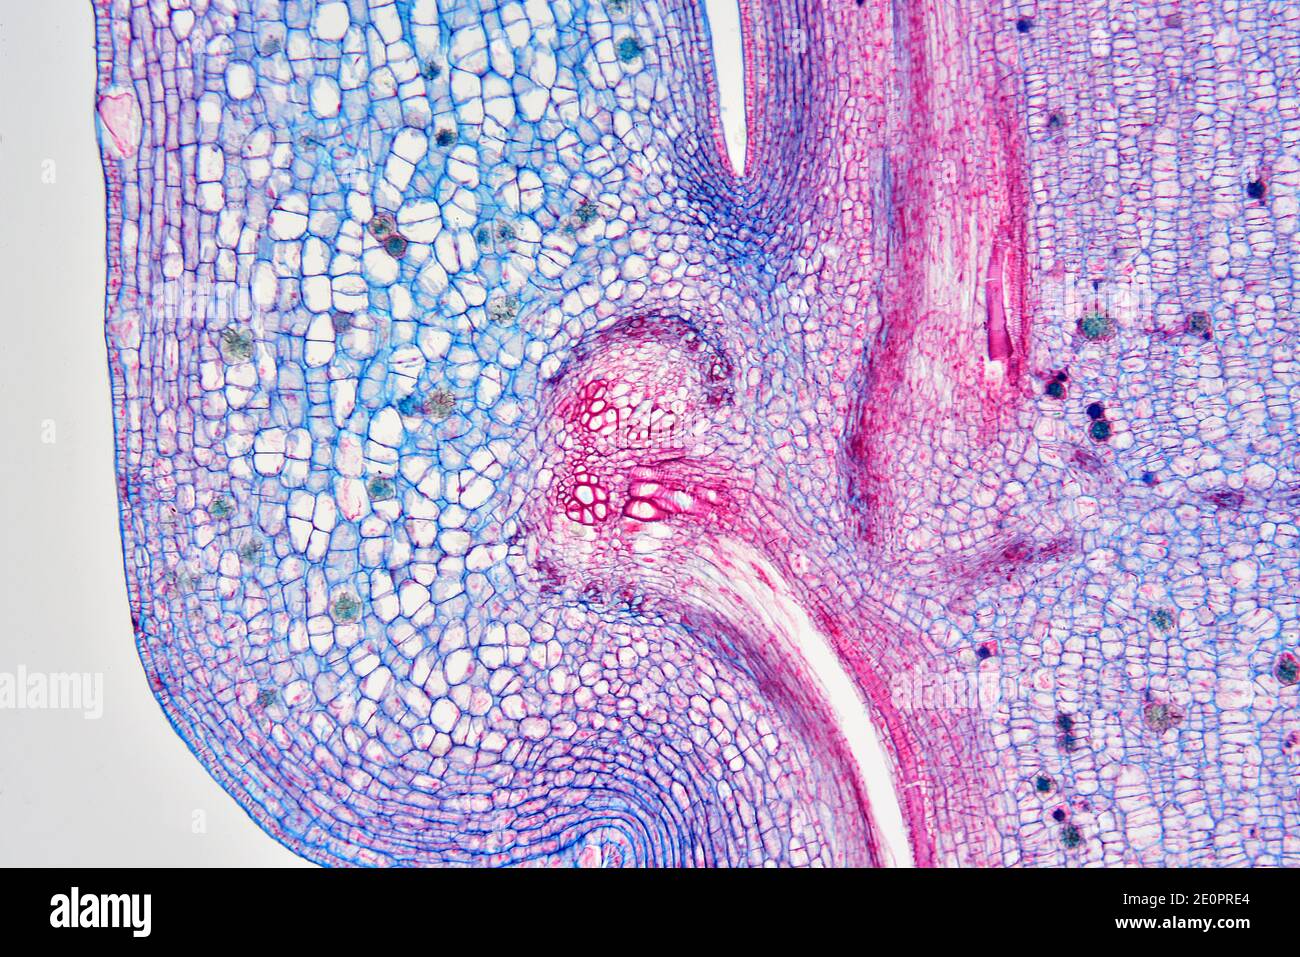 Nodo de un tallo vascular de planta. Fotomicrografía X50 a 10 cm de ancho. Foto de stock